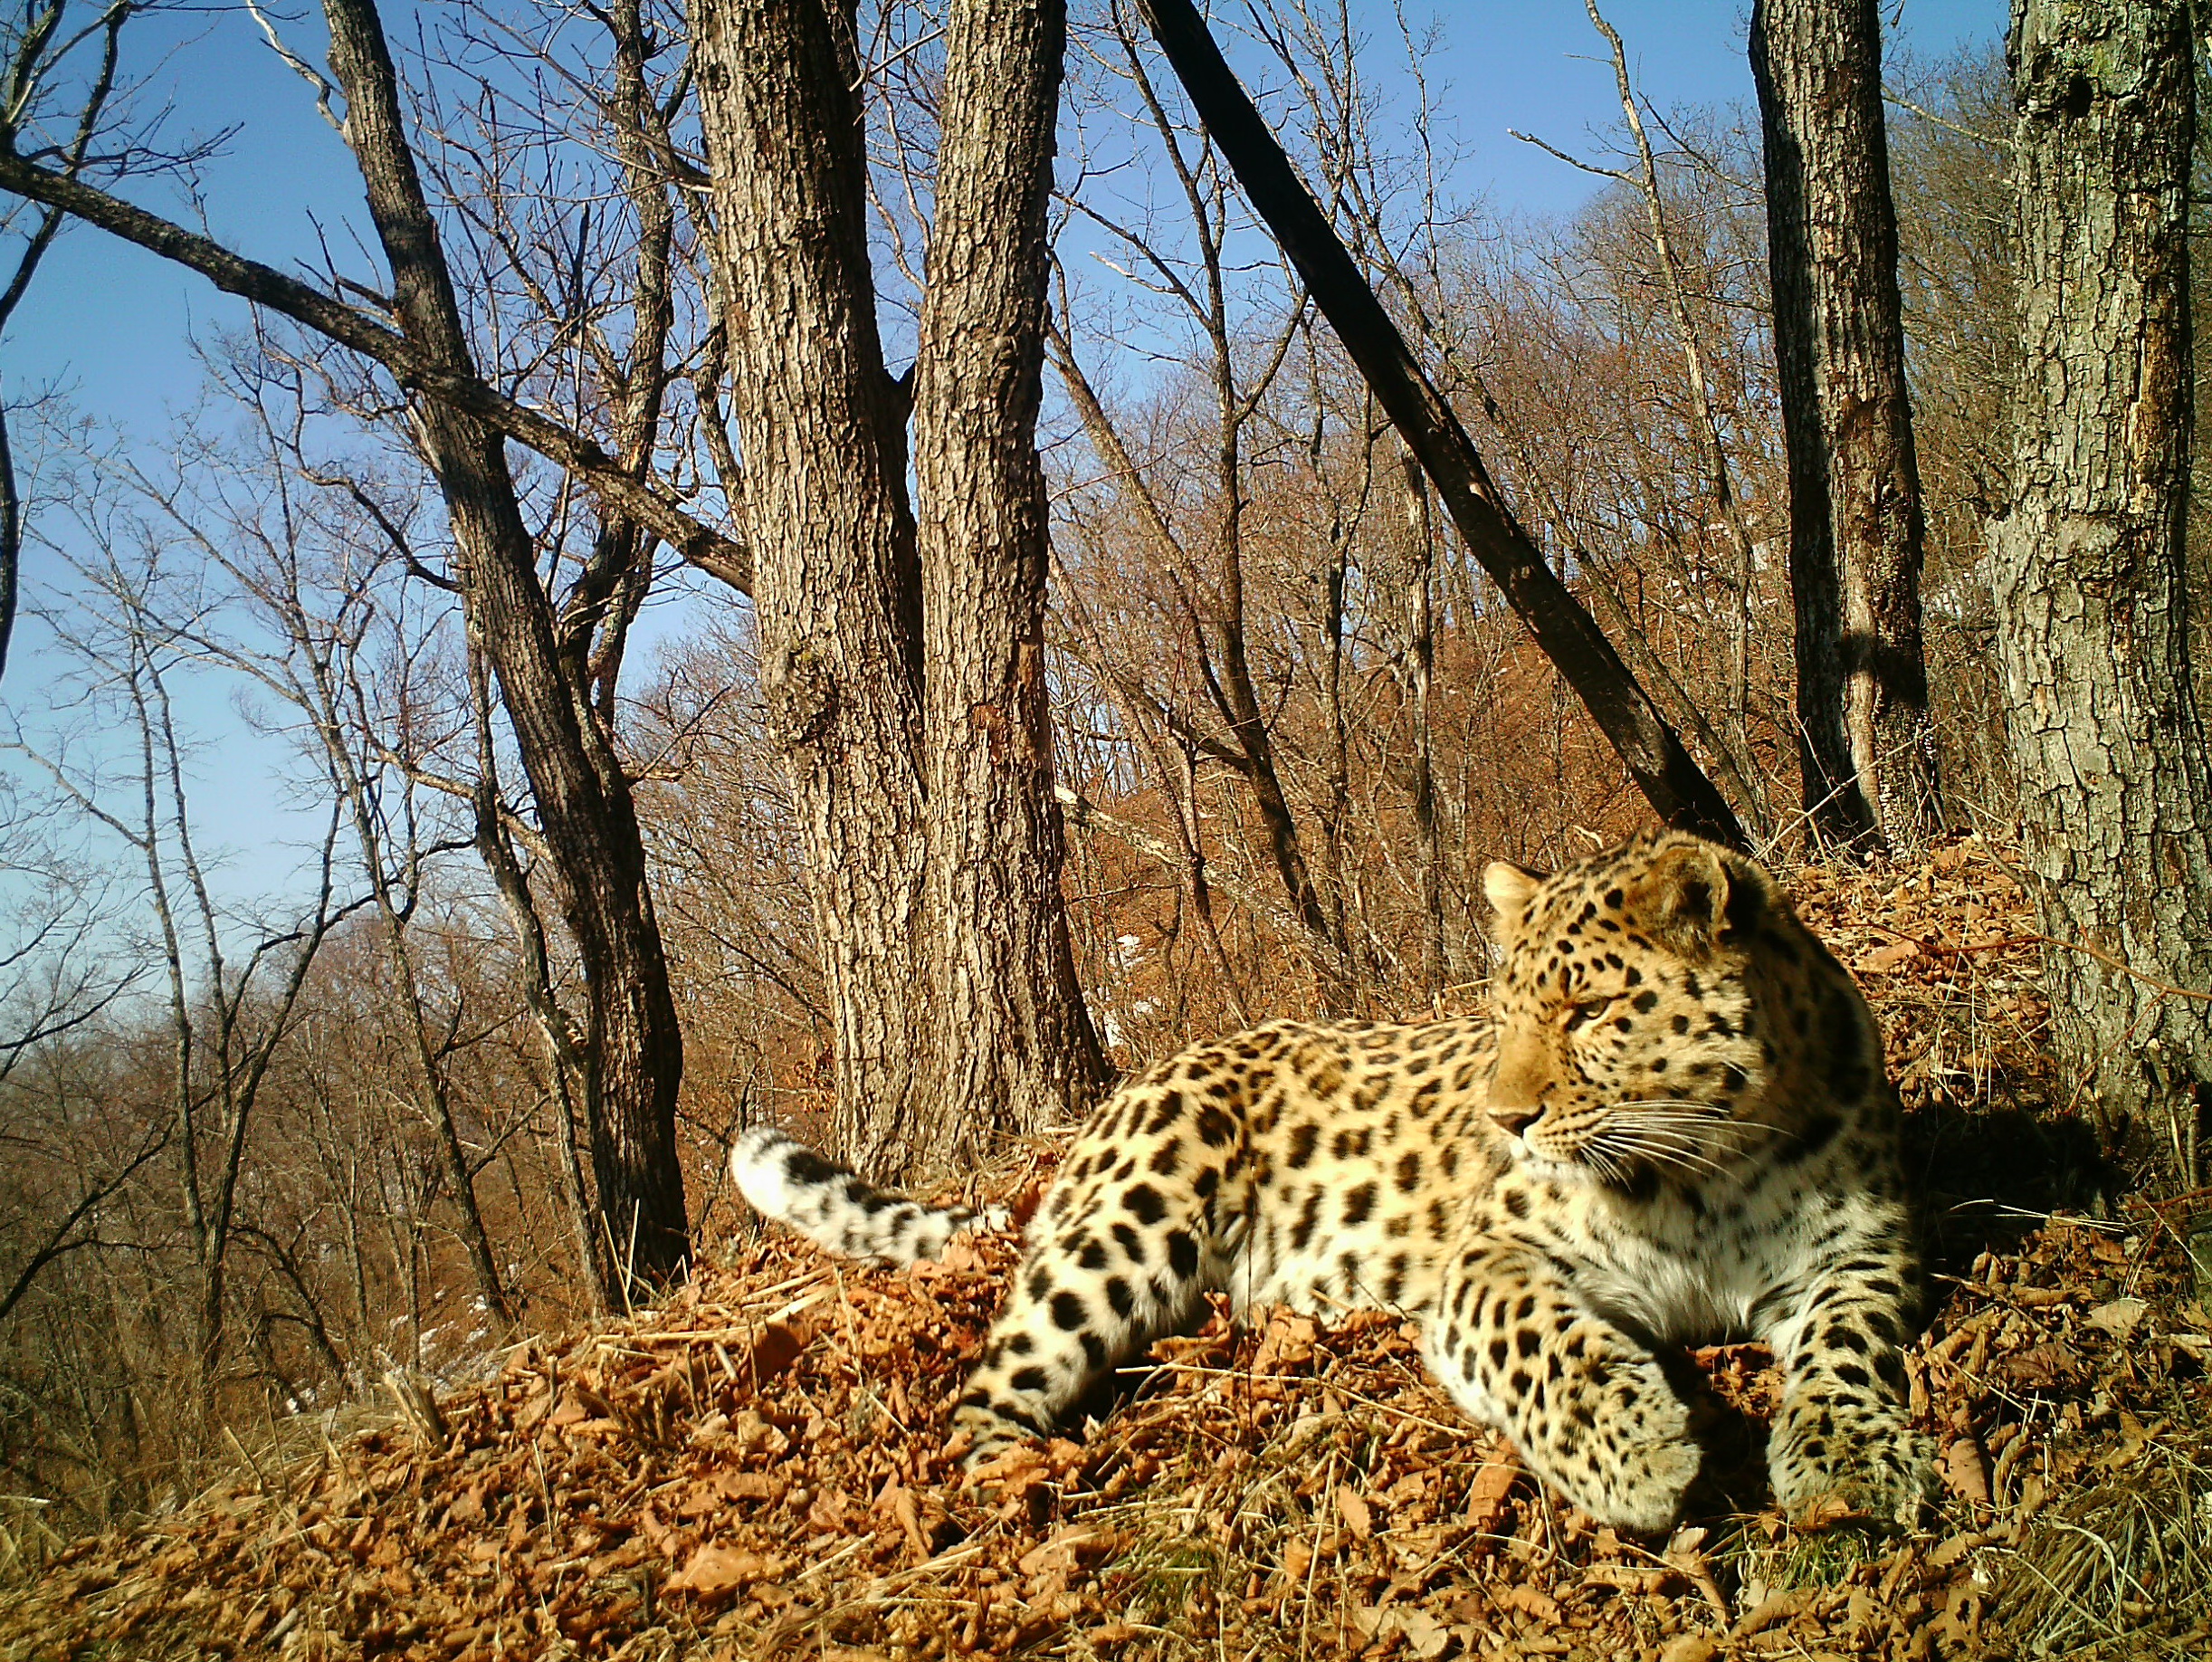 An Amur leopard in eastern Russia